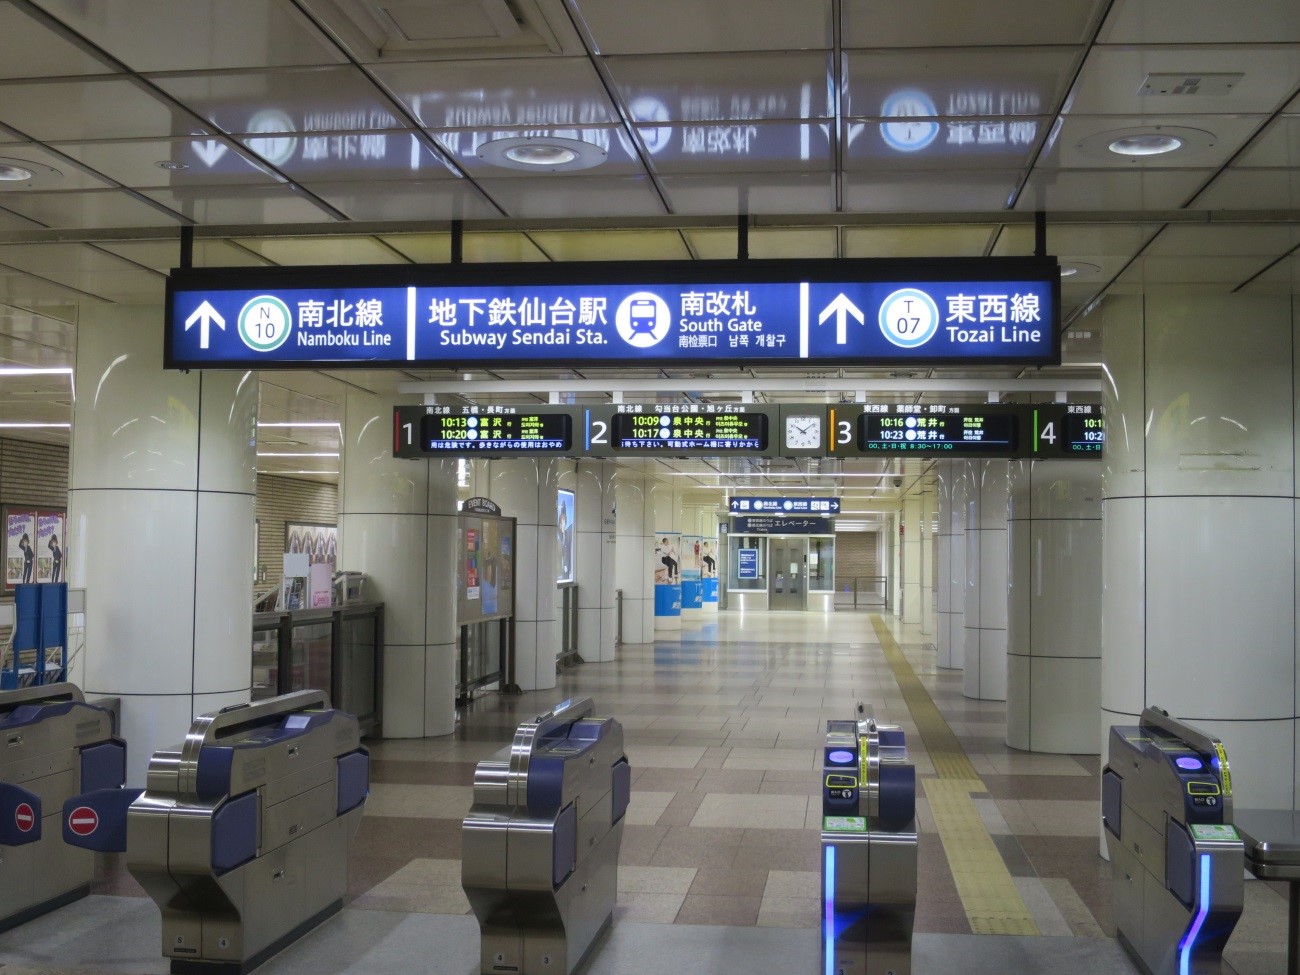 地下鉄仙台駅の南改札から出てください。